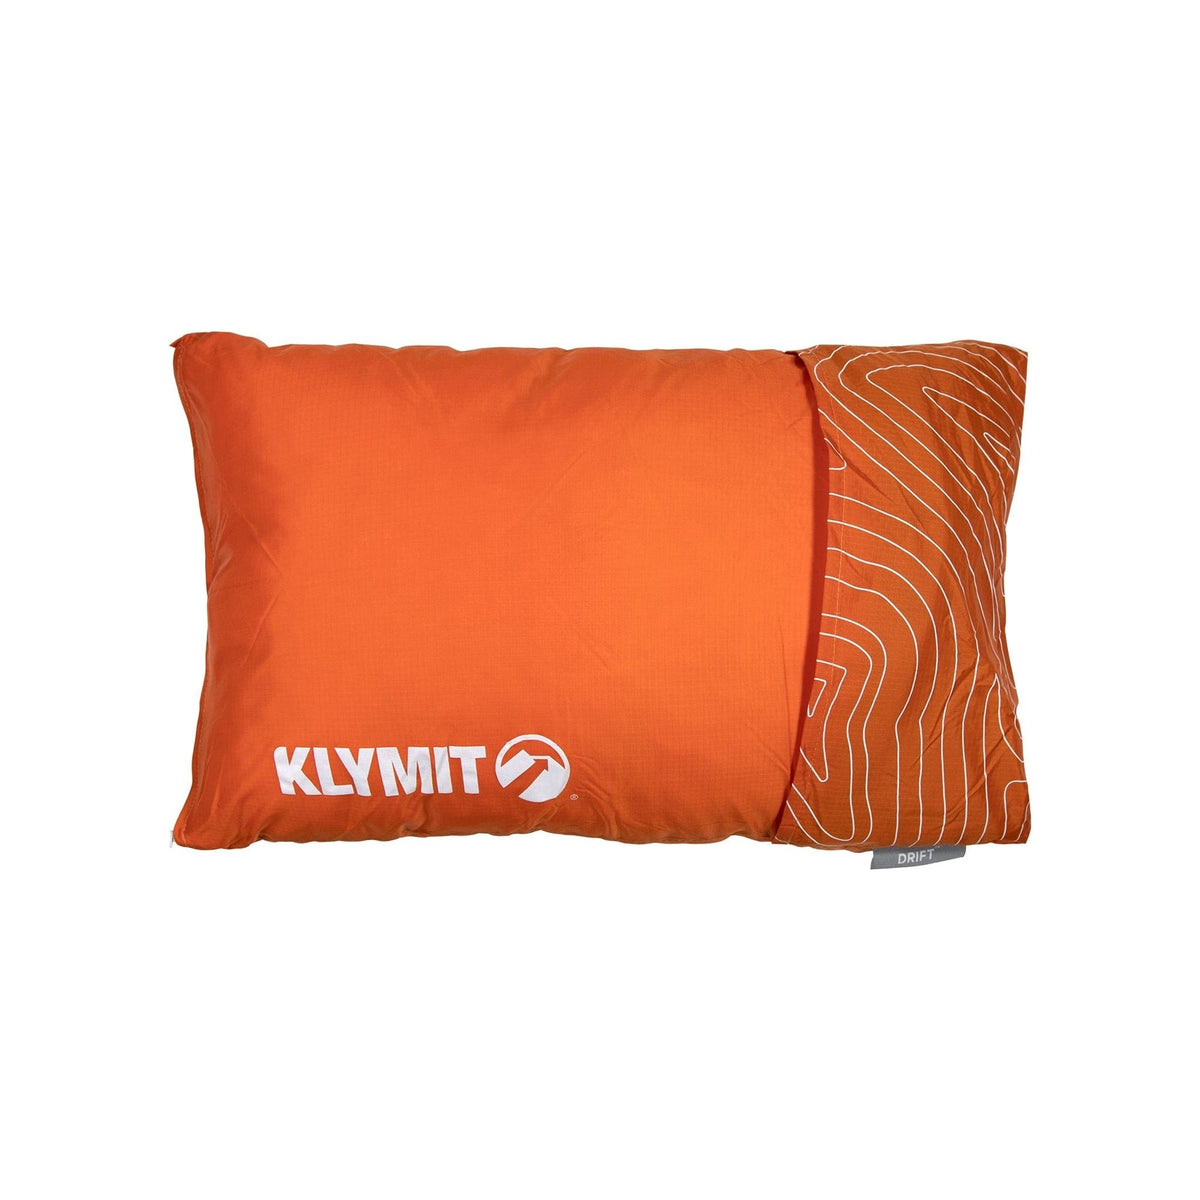 Klymit Orange - Regular Drift Camp Pillow by Klymit